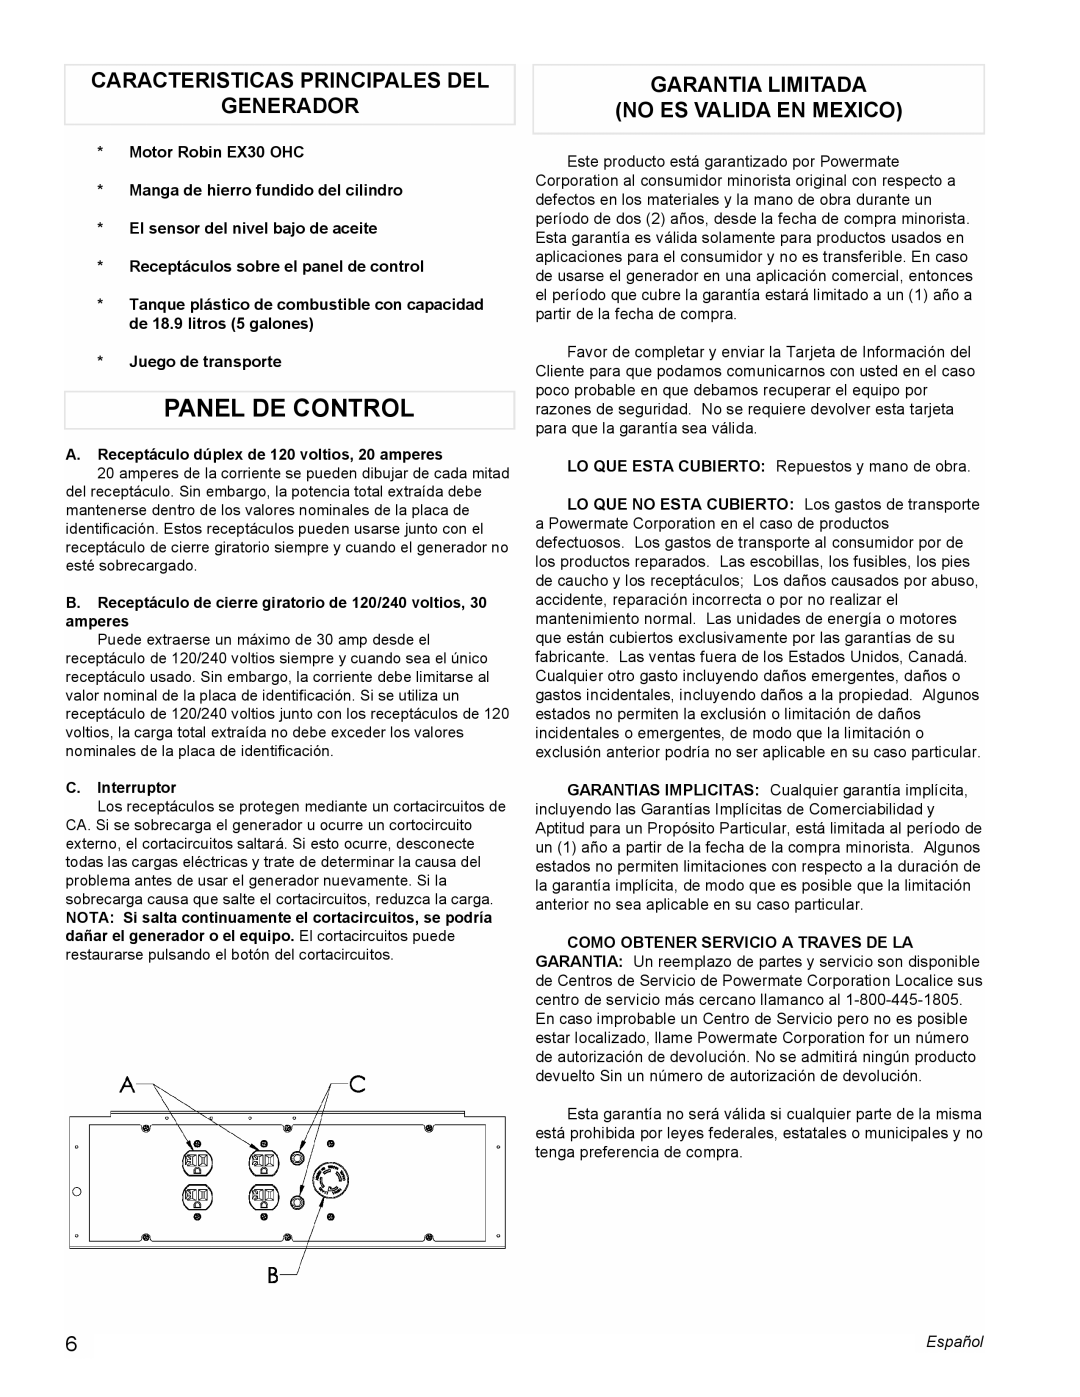 Powermate PM0435250 Panel De Control, Caracteristicas Principales Del Generador, Garantia Limitada No Es Valida En Mexico 